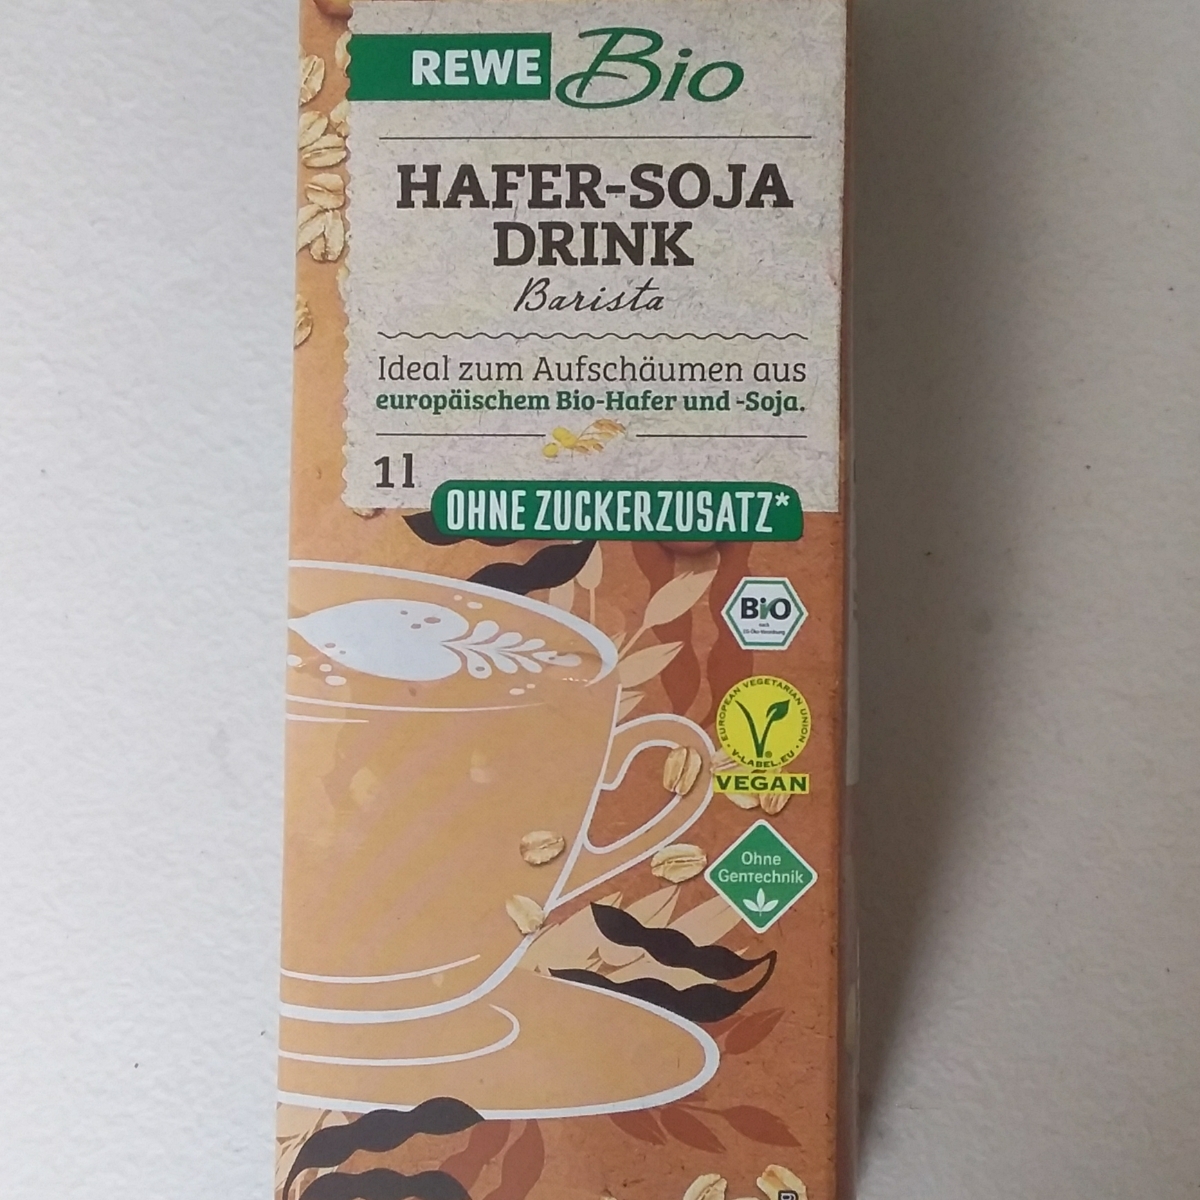 Rewe Bio Hafer Soja Drink Barista Reviews | abillion